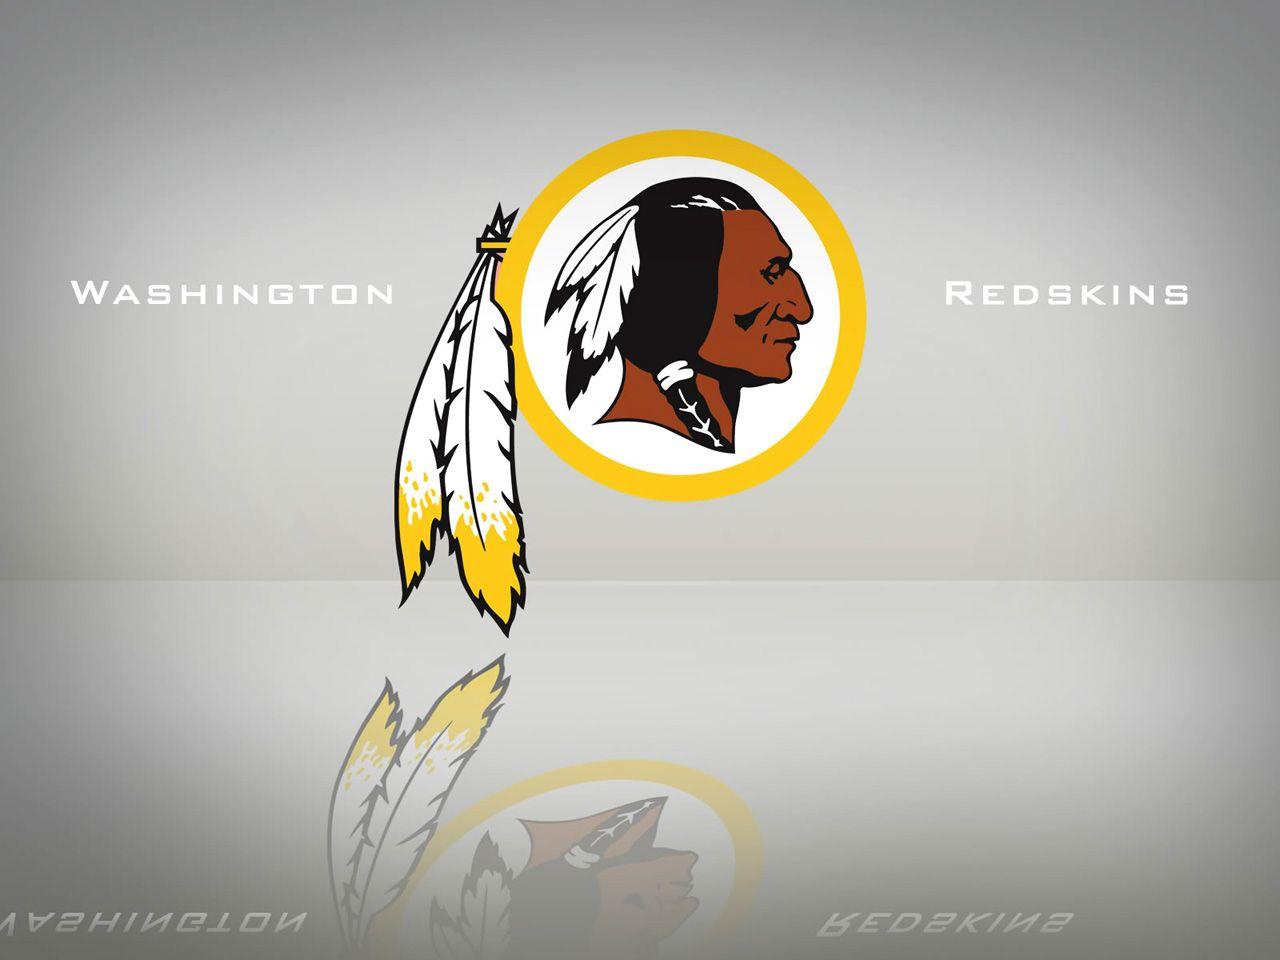 Download Redskins wallpaper HD image washington redskins wallpaper